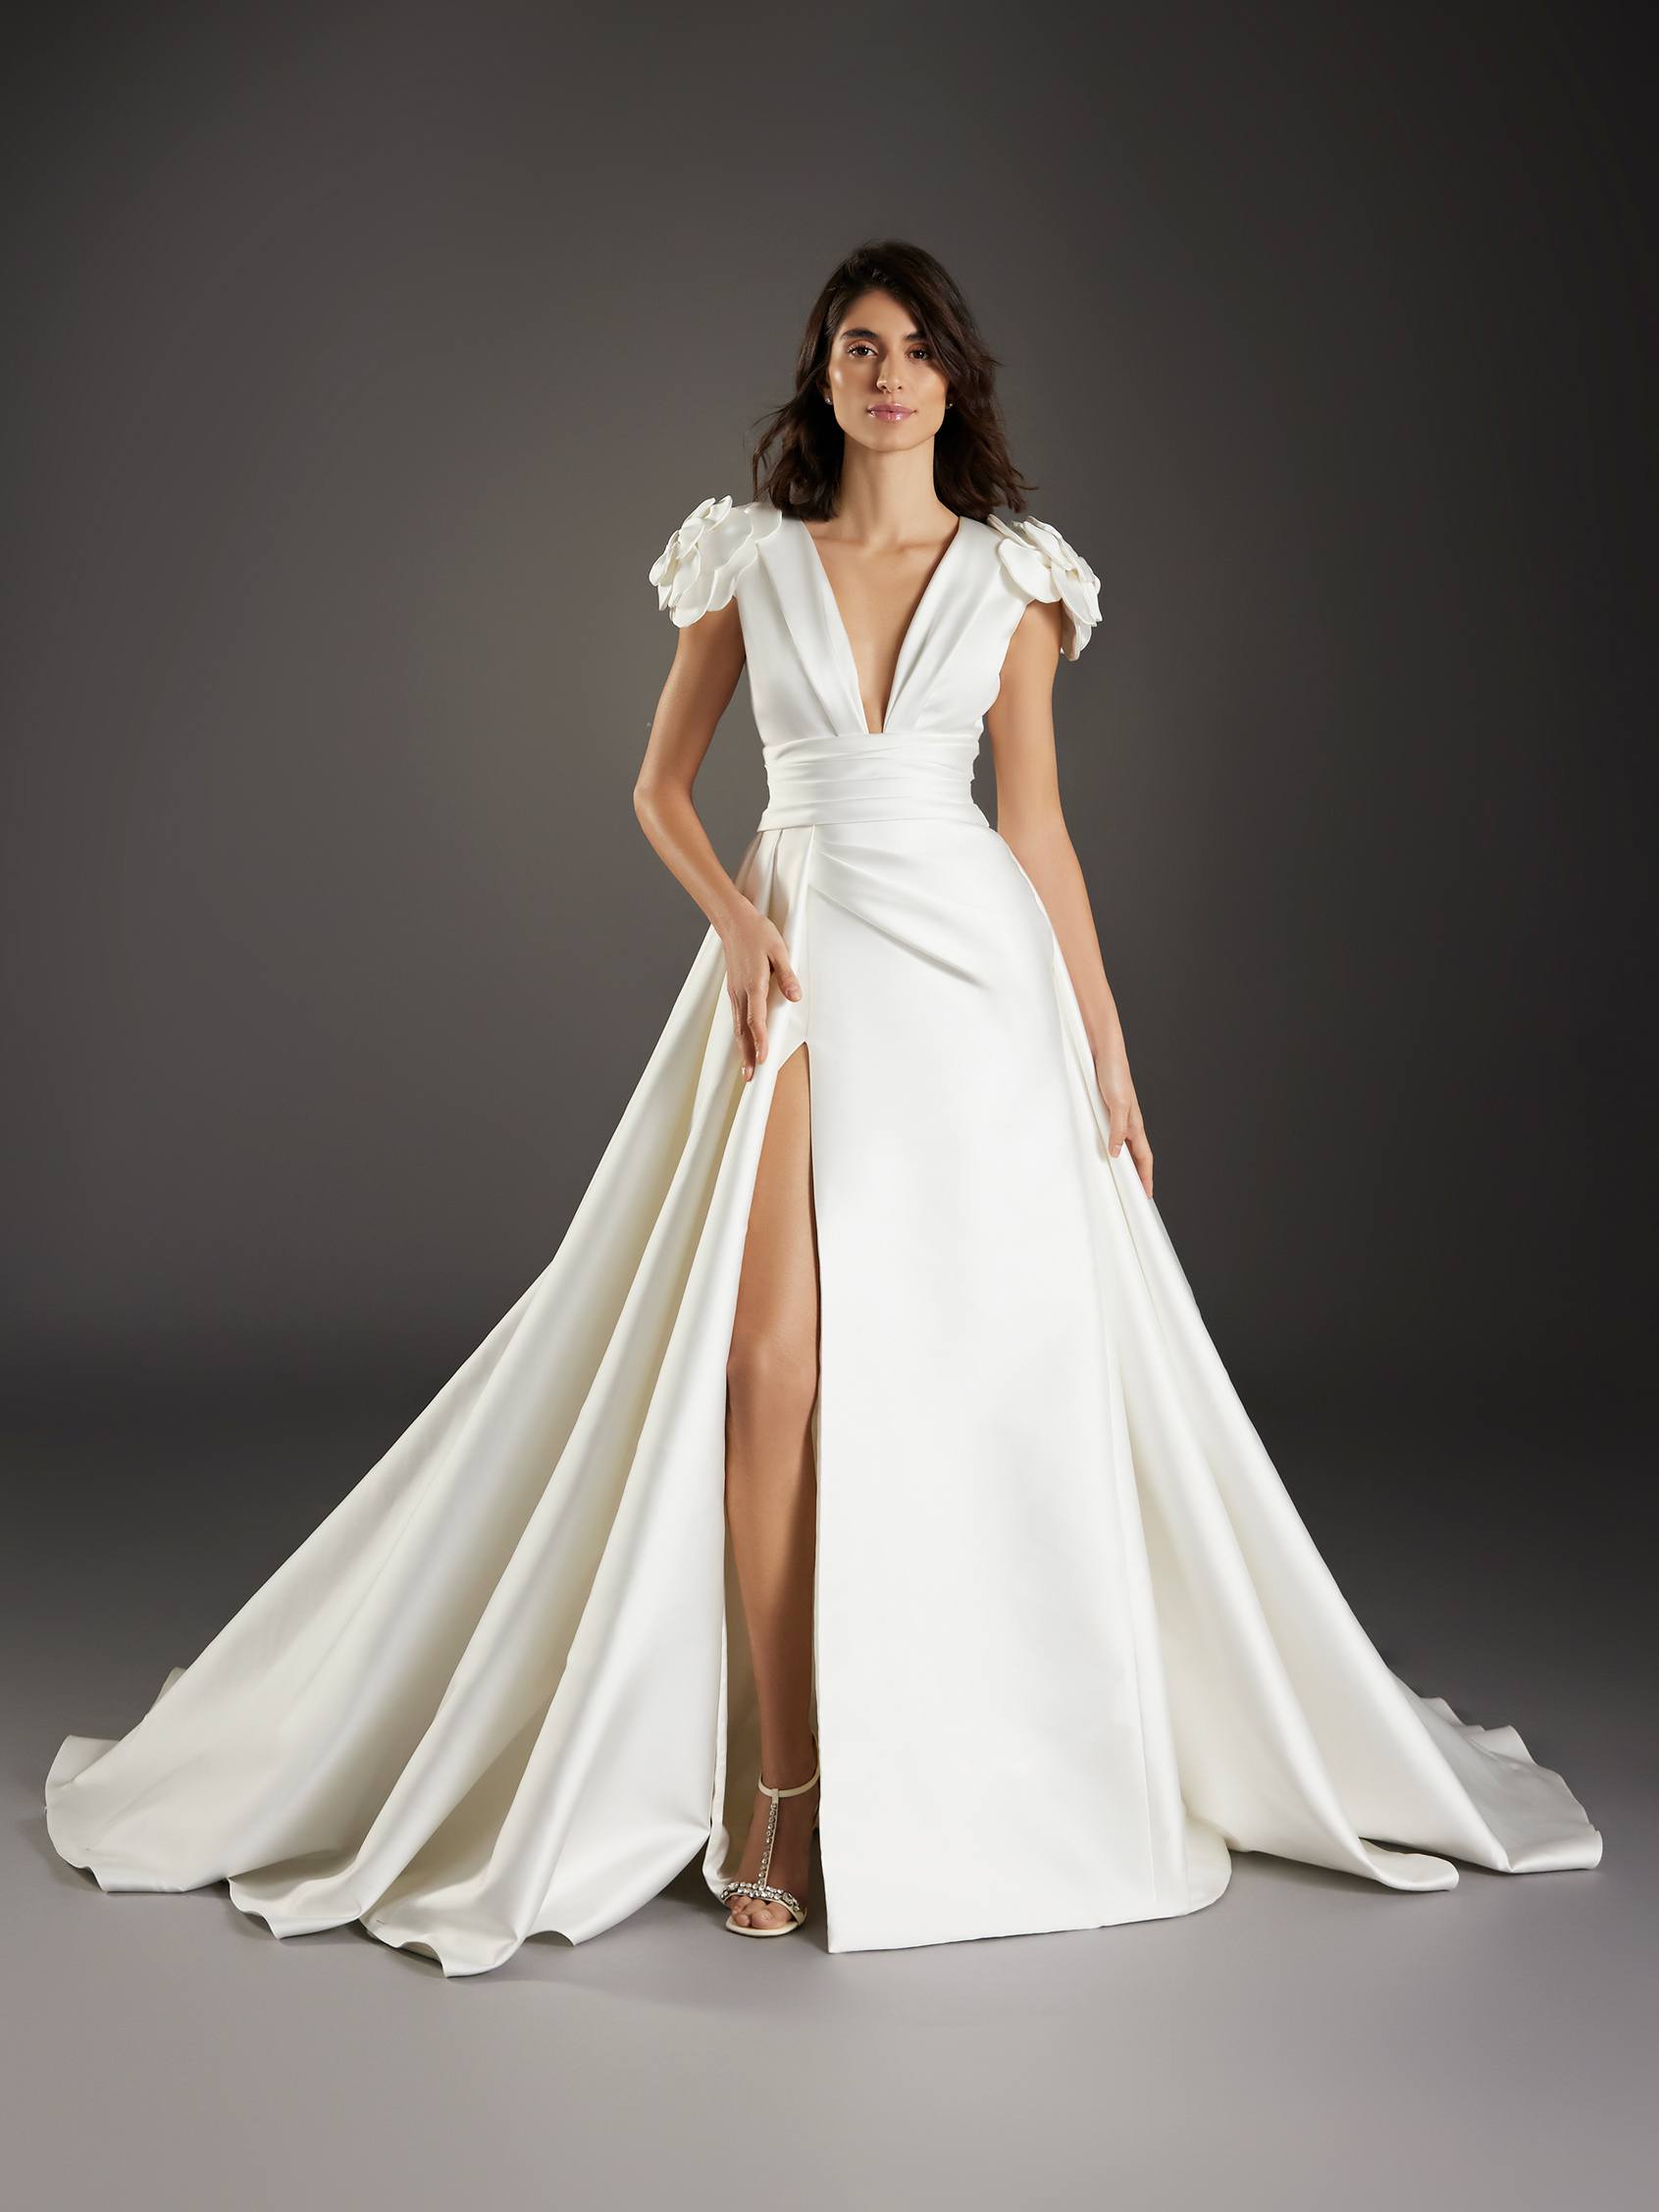 Atelier Pronovias Wedding Dresses  Alexandra's Boutique Pronovias Fashion  CALAS